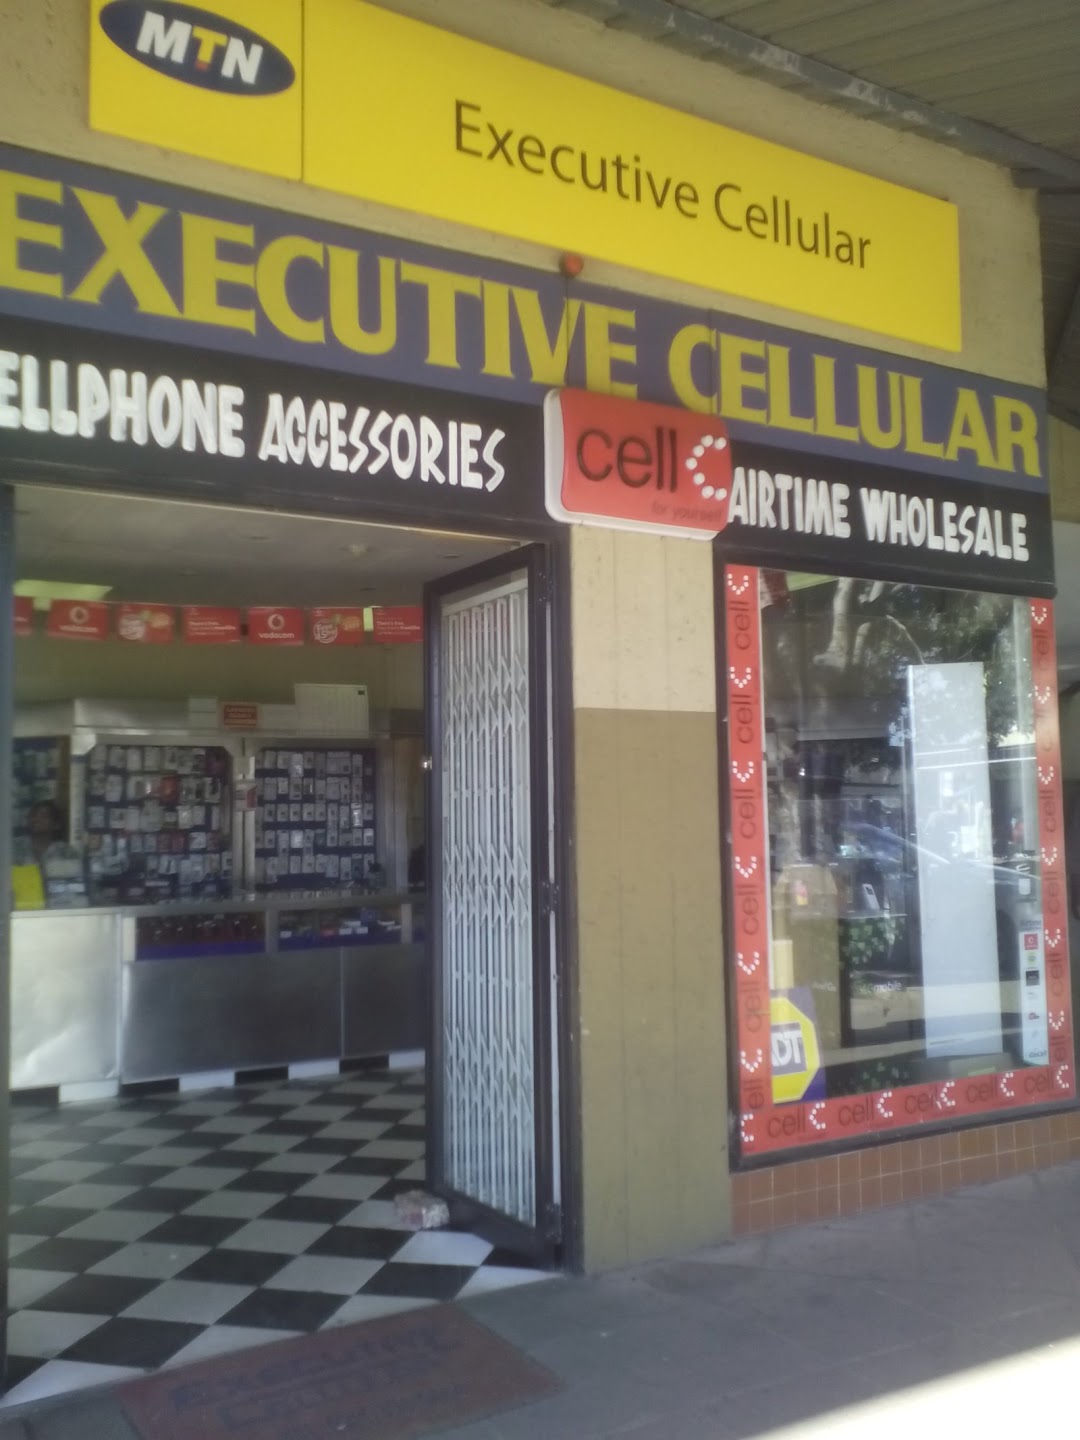 Executive Cellular